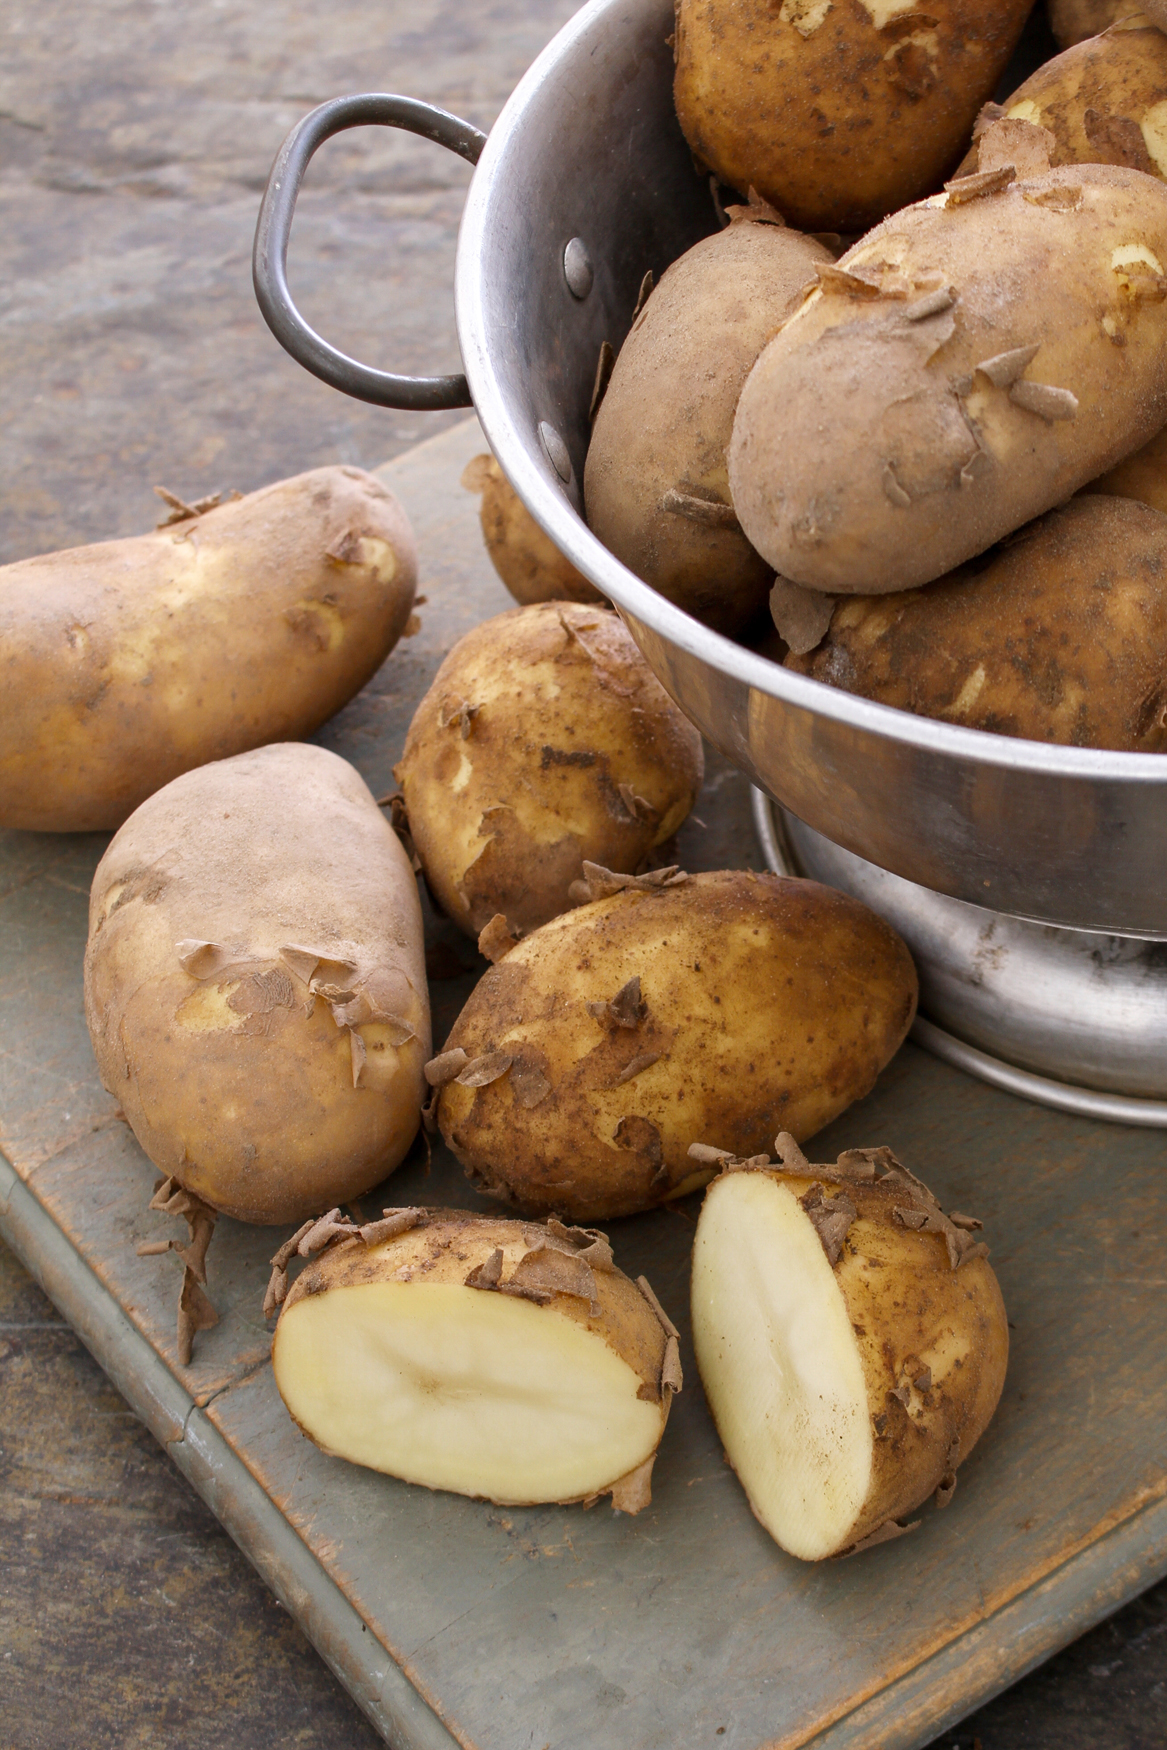 preparing fresh potatoes